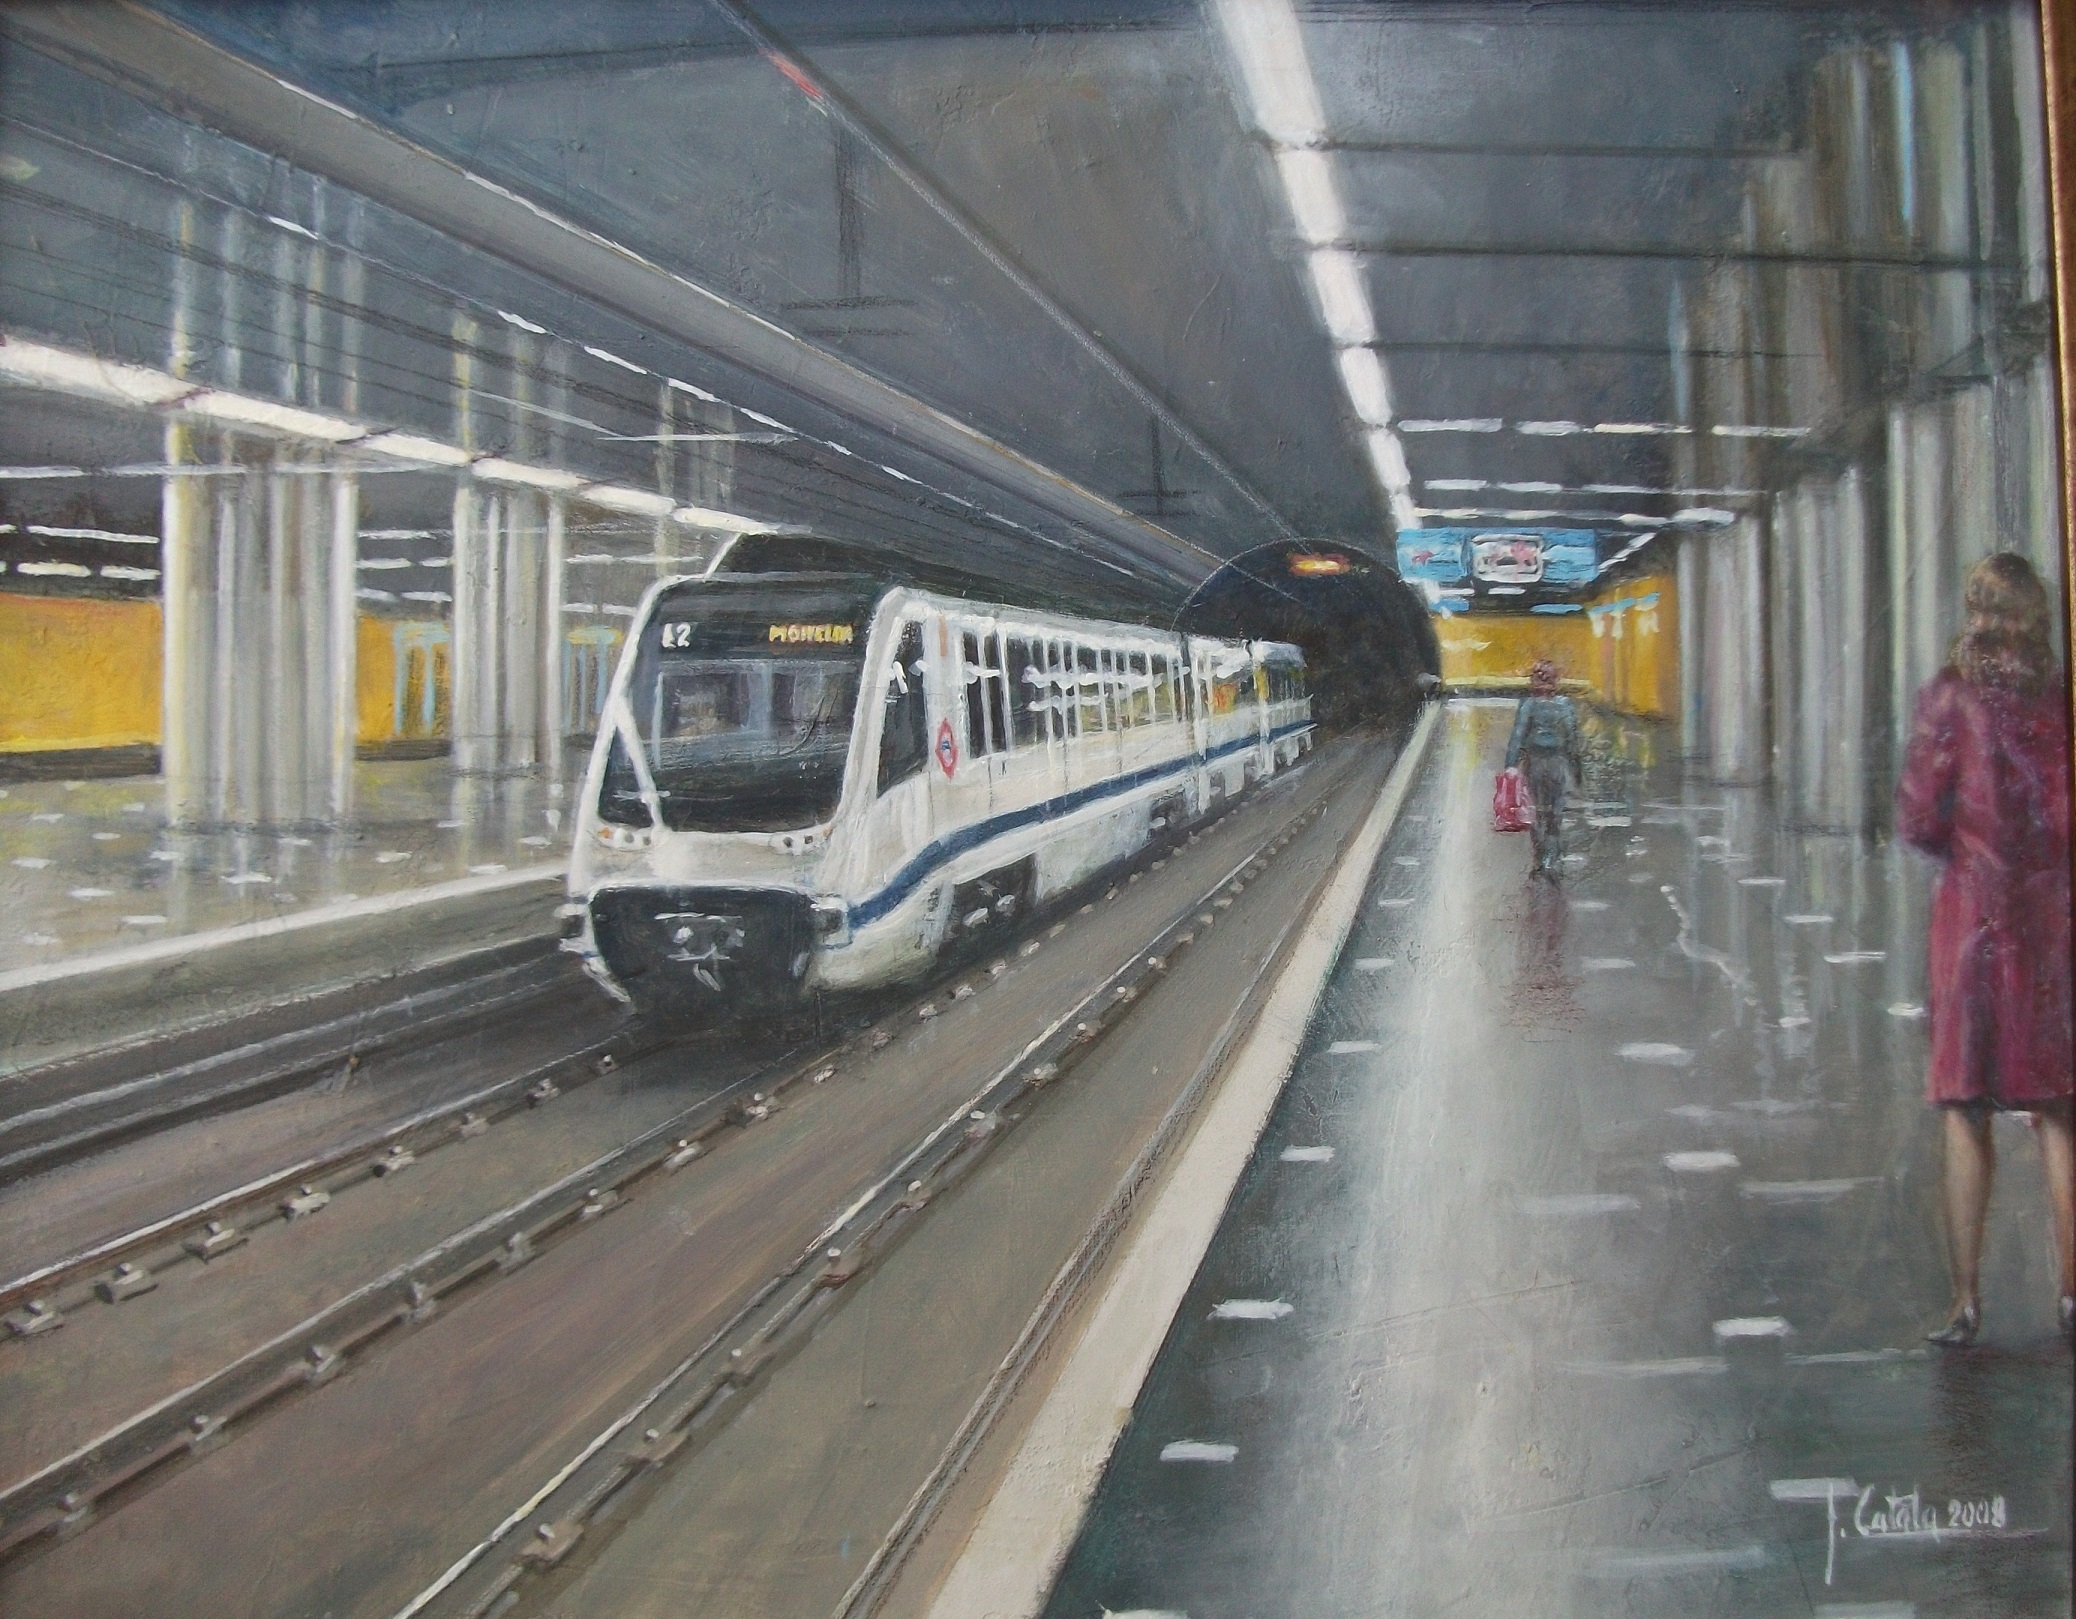 No. 33. Metro Moncloa 45x 55 cm